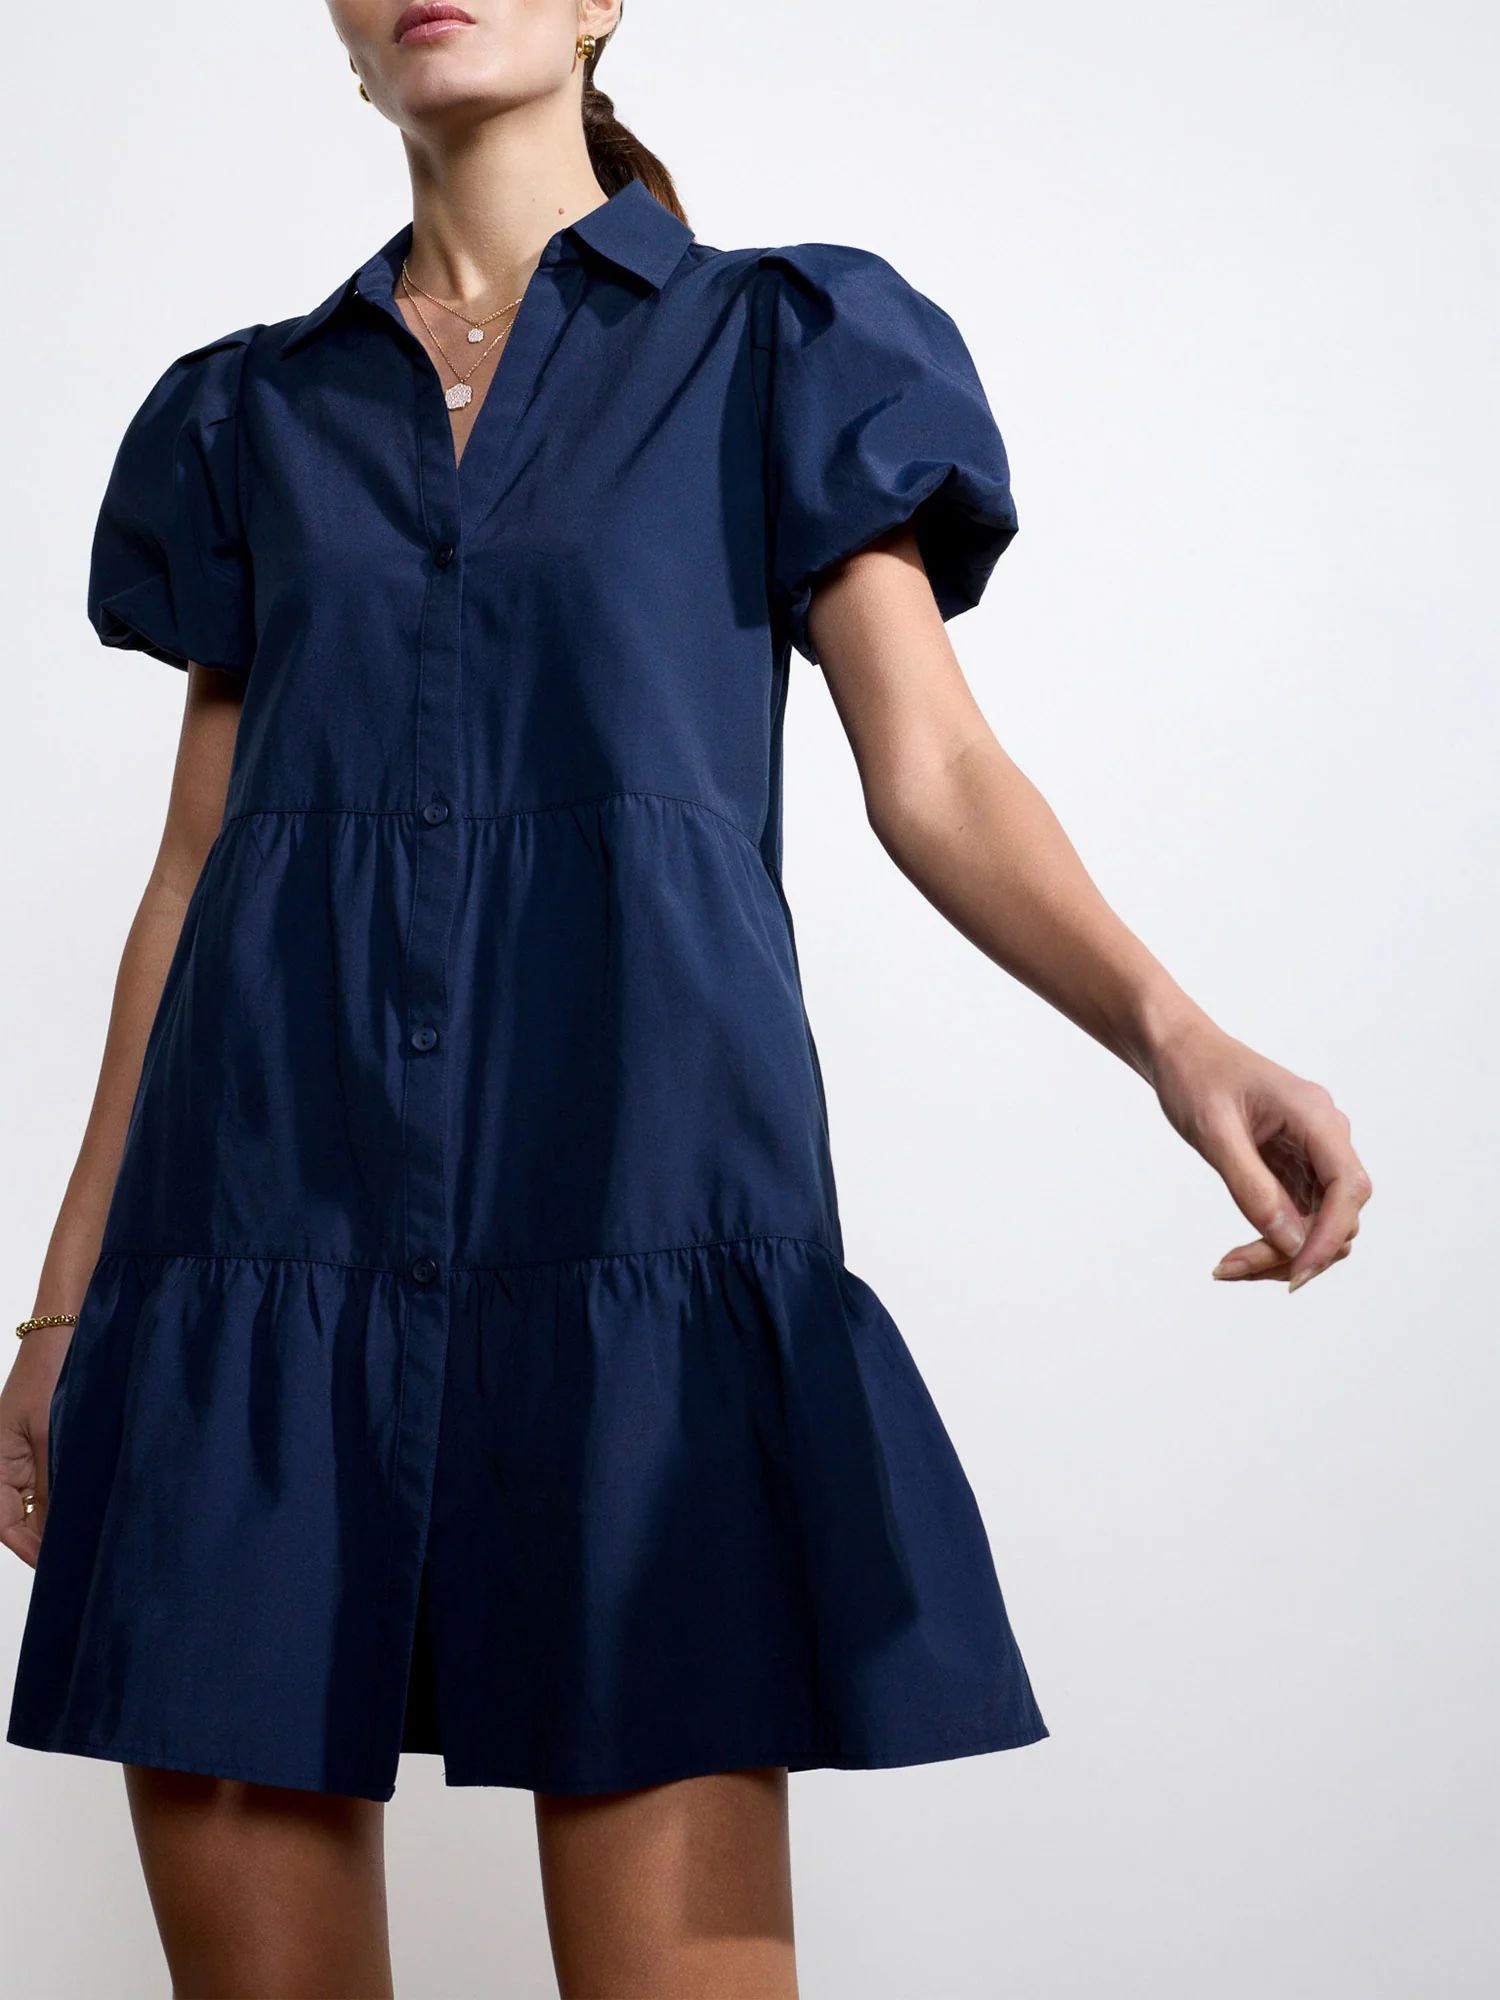 Brochu Walker | Women's Havana Mini Dress in Navy | Brochu Walker